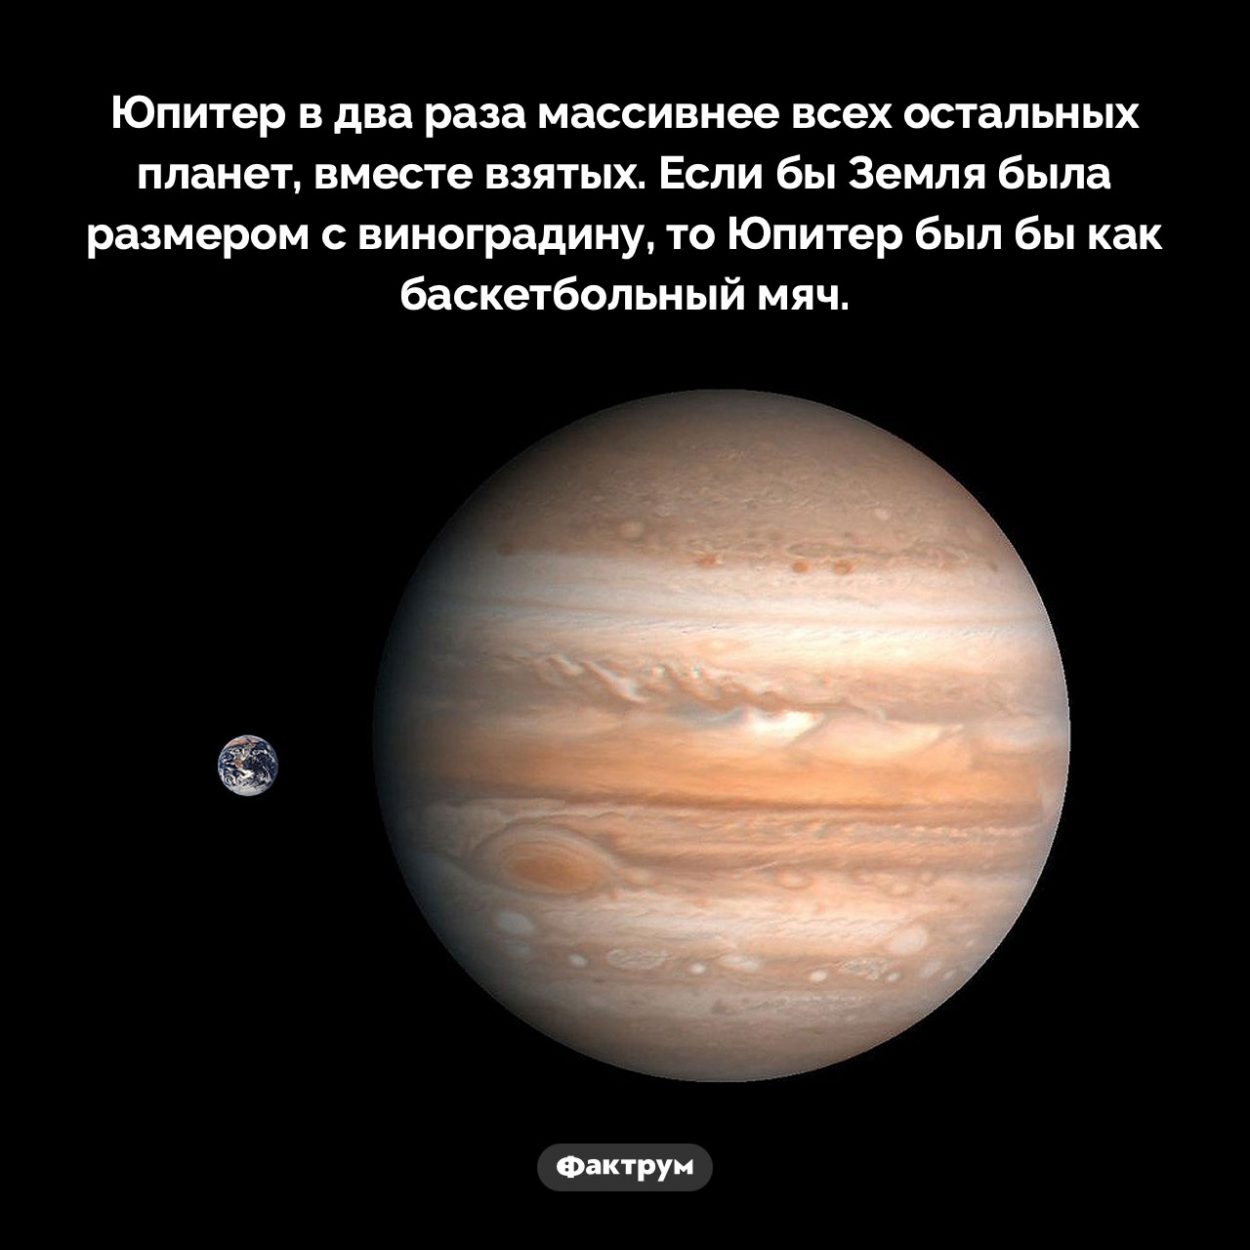 Размер Юпитера. Юпитер в два раза массивнее всех остальных планет, вместе взятых. Если бы Земля была размером с виноградину, то Юпитер был бы как баскетбольный мяч.